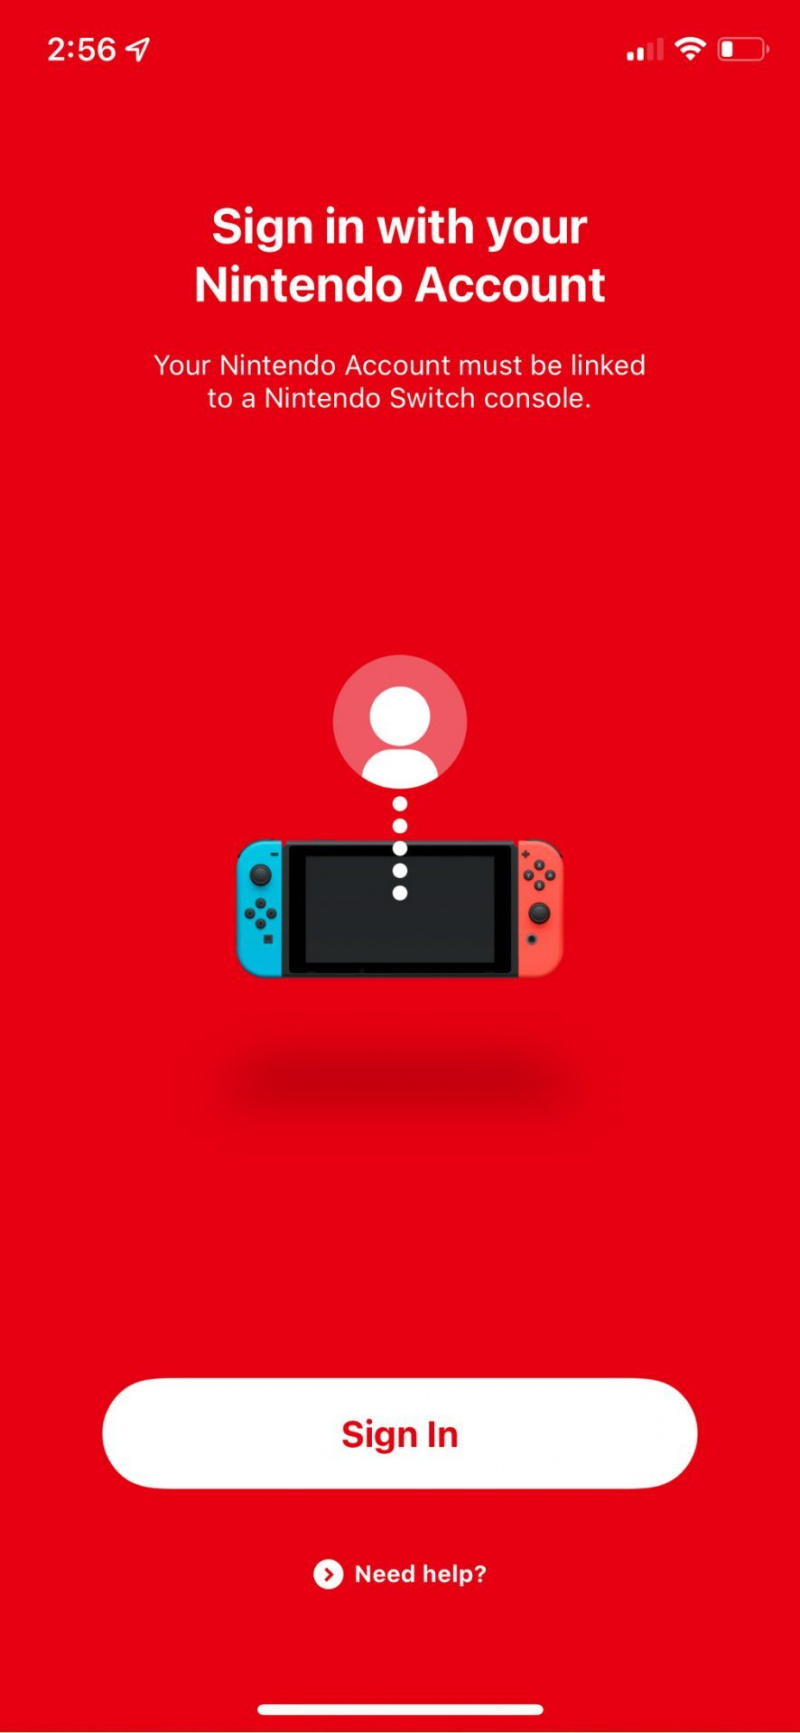   הגדרת צ'אט קולי עם כניסה לאפליקציה מקוונת של Nintendo Switch